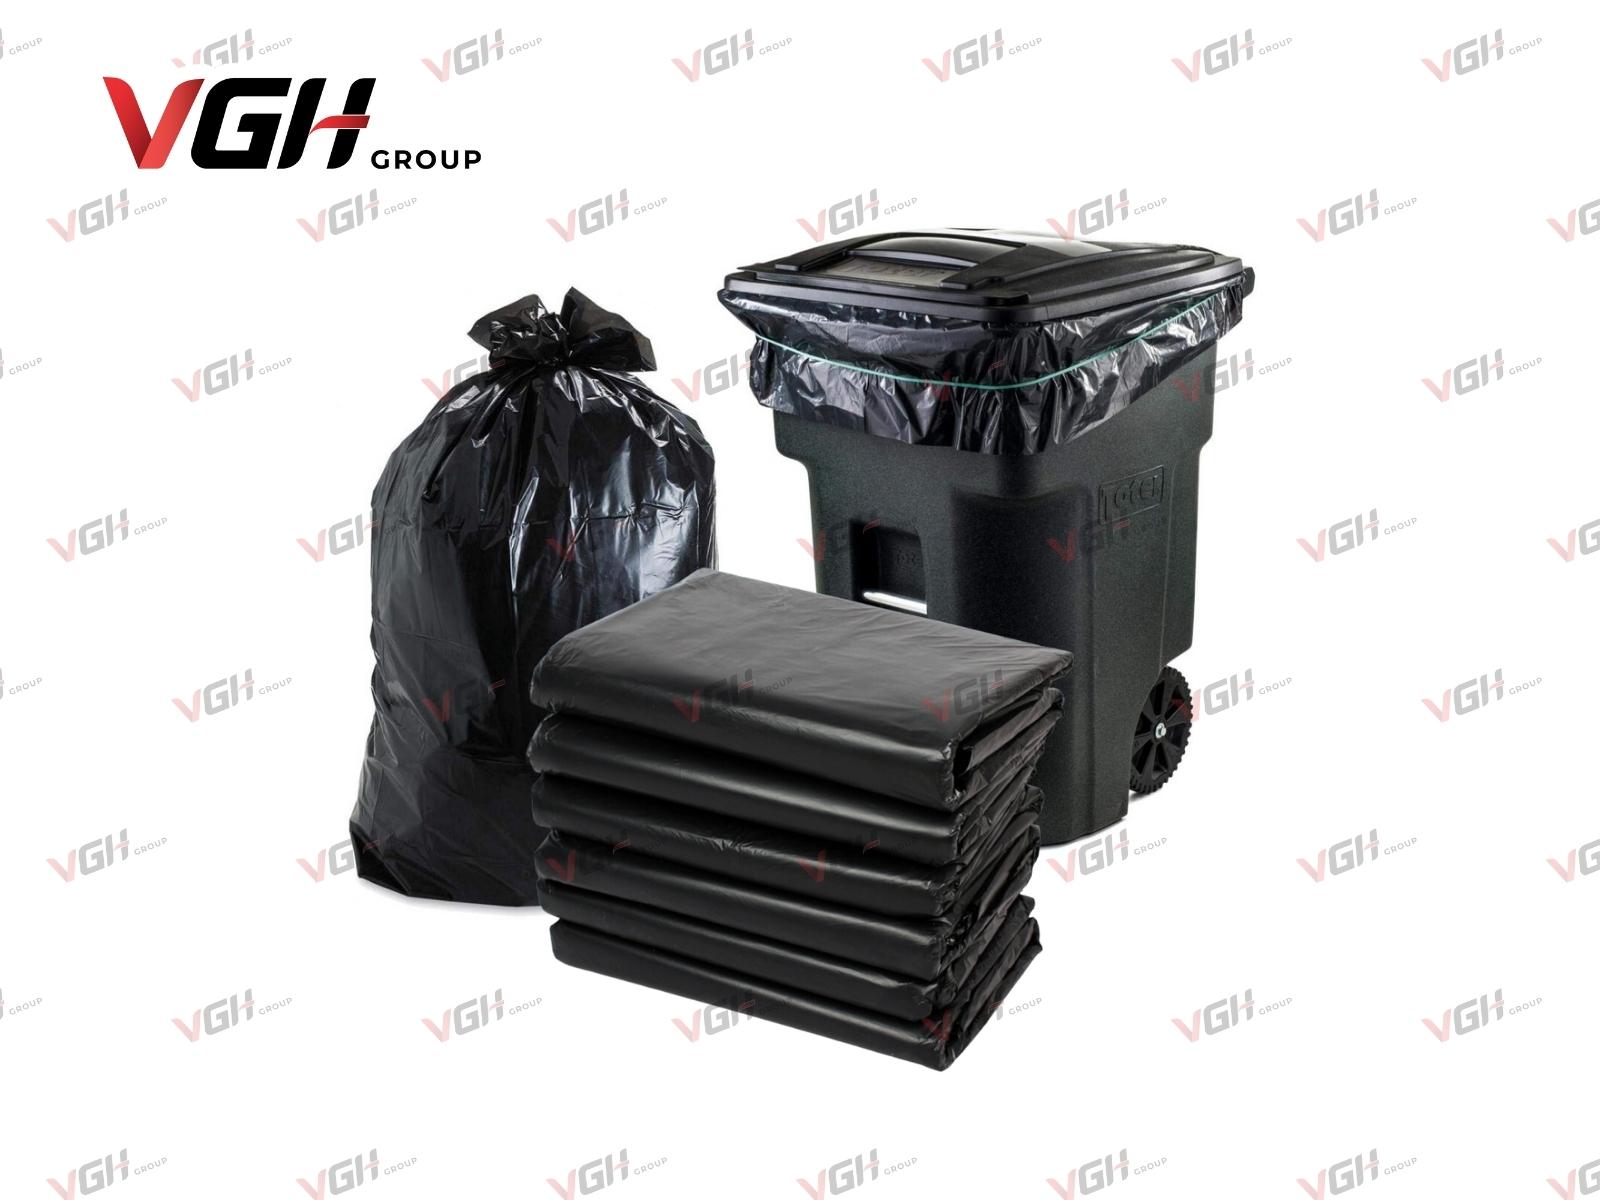 Túi đựng rác đen loại lớn được sử dụng rộng rãi trong sinh hoạt - vgh, bao đựng rác công nghiệp, bao đựng rác đại, bao đựng rác loại lớn, bao đựng rác lớn, bao đựng rác size lớn, bao rác 70x90, bao rác 90 * 120, bao rác 90*120, bao rác 90x120, bao rác công nghiệp, bao rác cỡ đại, bao rác cực đại, bao rác đại, bao rác đen 90 x 120, bao rác đen 90x120, bao rác đen công nghiệp, bao rác đen đại, bao rác đen lớn, bao rác loại đại, bao rác lớn, bao rác size đại, bao rác size lớn, bịch đựng rác lớn, bịch rác đại, bịch rác lớn, bọc đựng rác lớn, bọc rác 90x120, giá bao rác công nghiệp, giá túi đựng rác đại, kích thước bao rác đại, túi đựng rác 120l, túi đựng rác 240l, túi đựng rác 50kg, túi đựng rác 60l, túi đựng rác 90x120, túi đựng rác công nghiệp, túi đựng rác cỡ đại, túi đựng rác cỡ lớn, túi đựng rác cực đại, túi đựng rác đại, túi đựng rác đen loại lớn, túi đựng rác loại lớn, túi đựng rác loại to, túi đựng rác lớn, túi đựng rác màu đen loại to, túi đựng rác size đại, túi đựng rác size lớn, túi đựng rác thùng 120l, túi đựng rác thùng 240l, túi đựng rác thùng 60 lít, túi đựng rác to, 